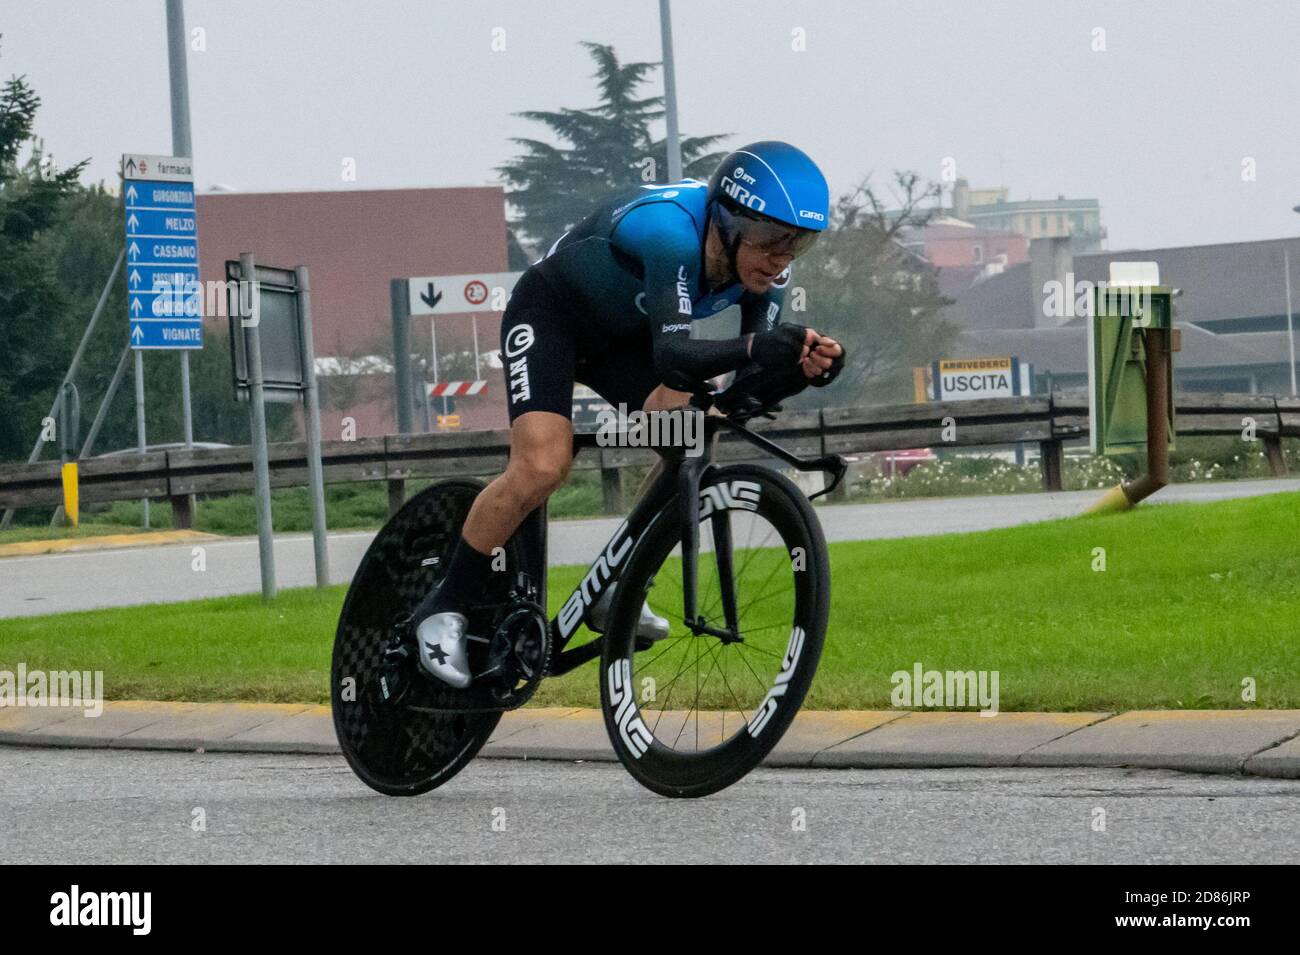 Domenico Pozzovivo, NTT Pro Cycling Team during Cernusco sul Naviglio - Milano, Giro d'Italia, cernusco sul naviglio, Italy, 25 Oct 2020 Credit: LM/Si Stock Photo